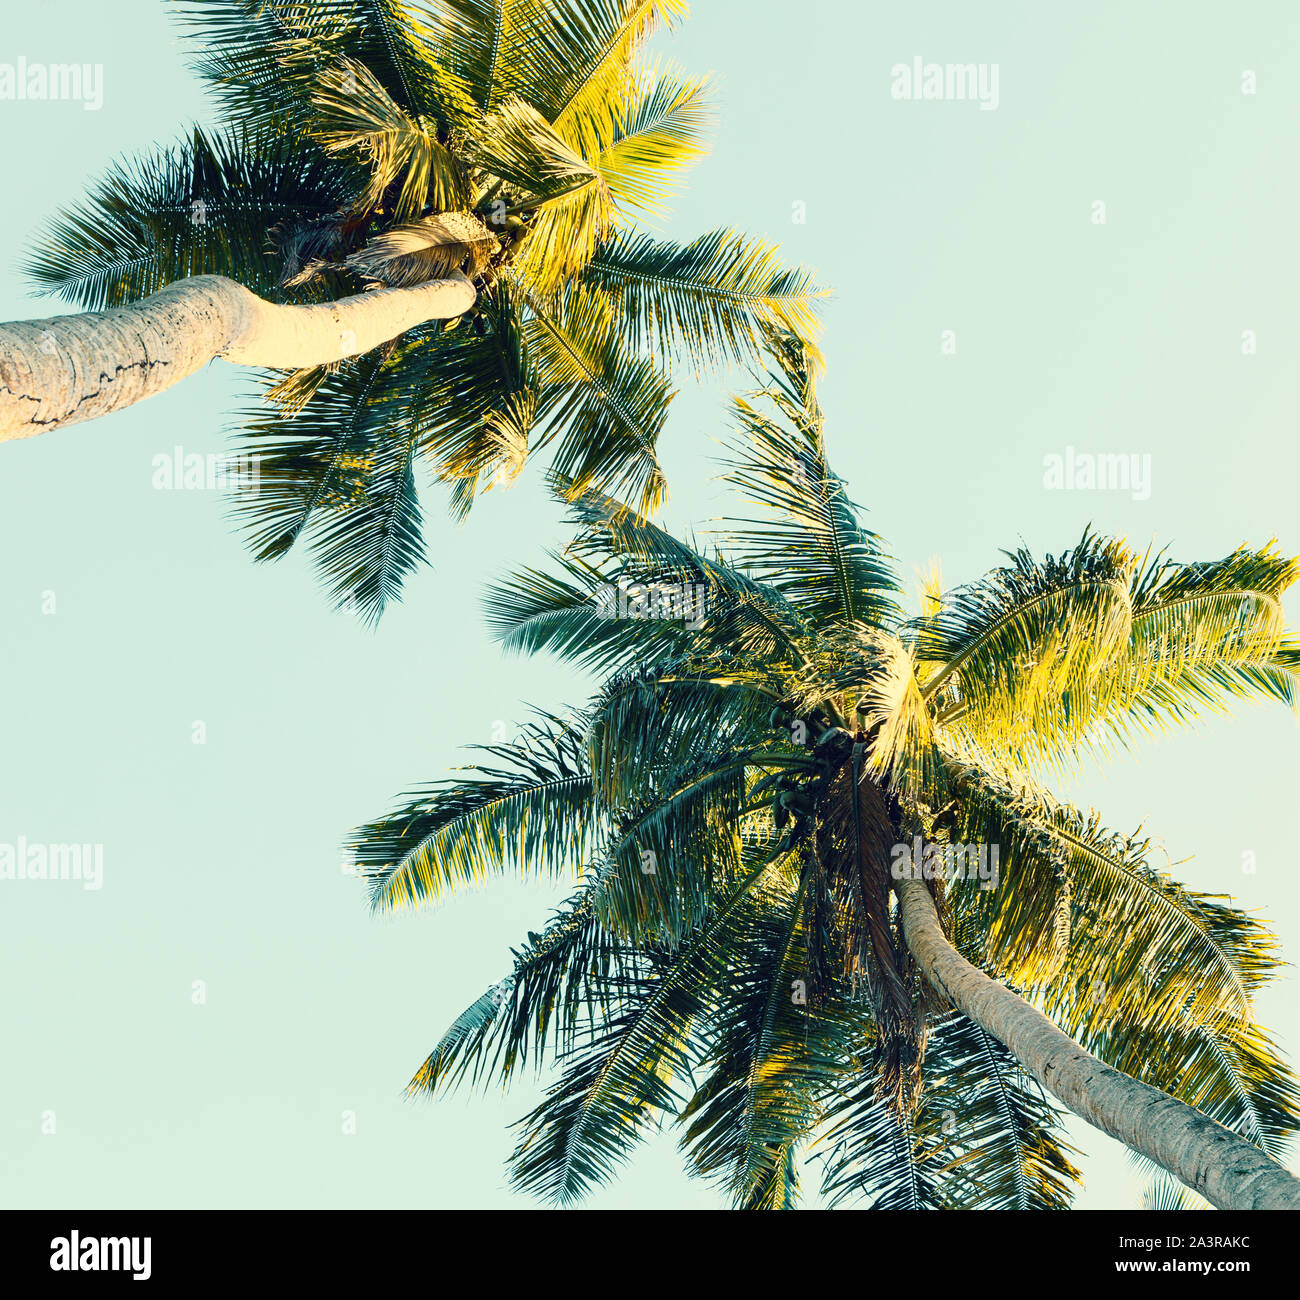 Kokospalmen am Himmel Hintergrund. Low Angle View. Getonten Bild Stockfoto